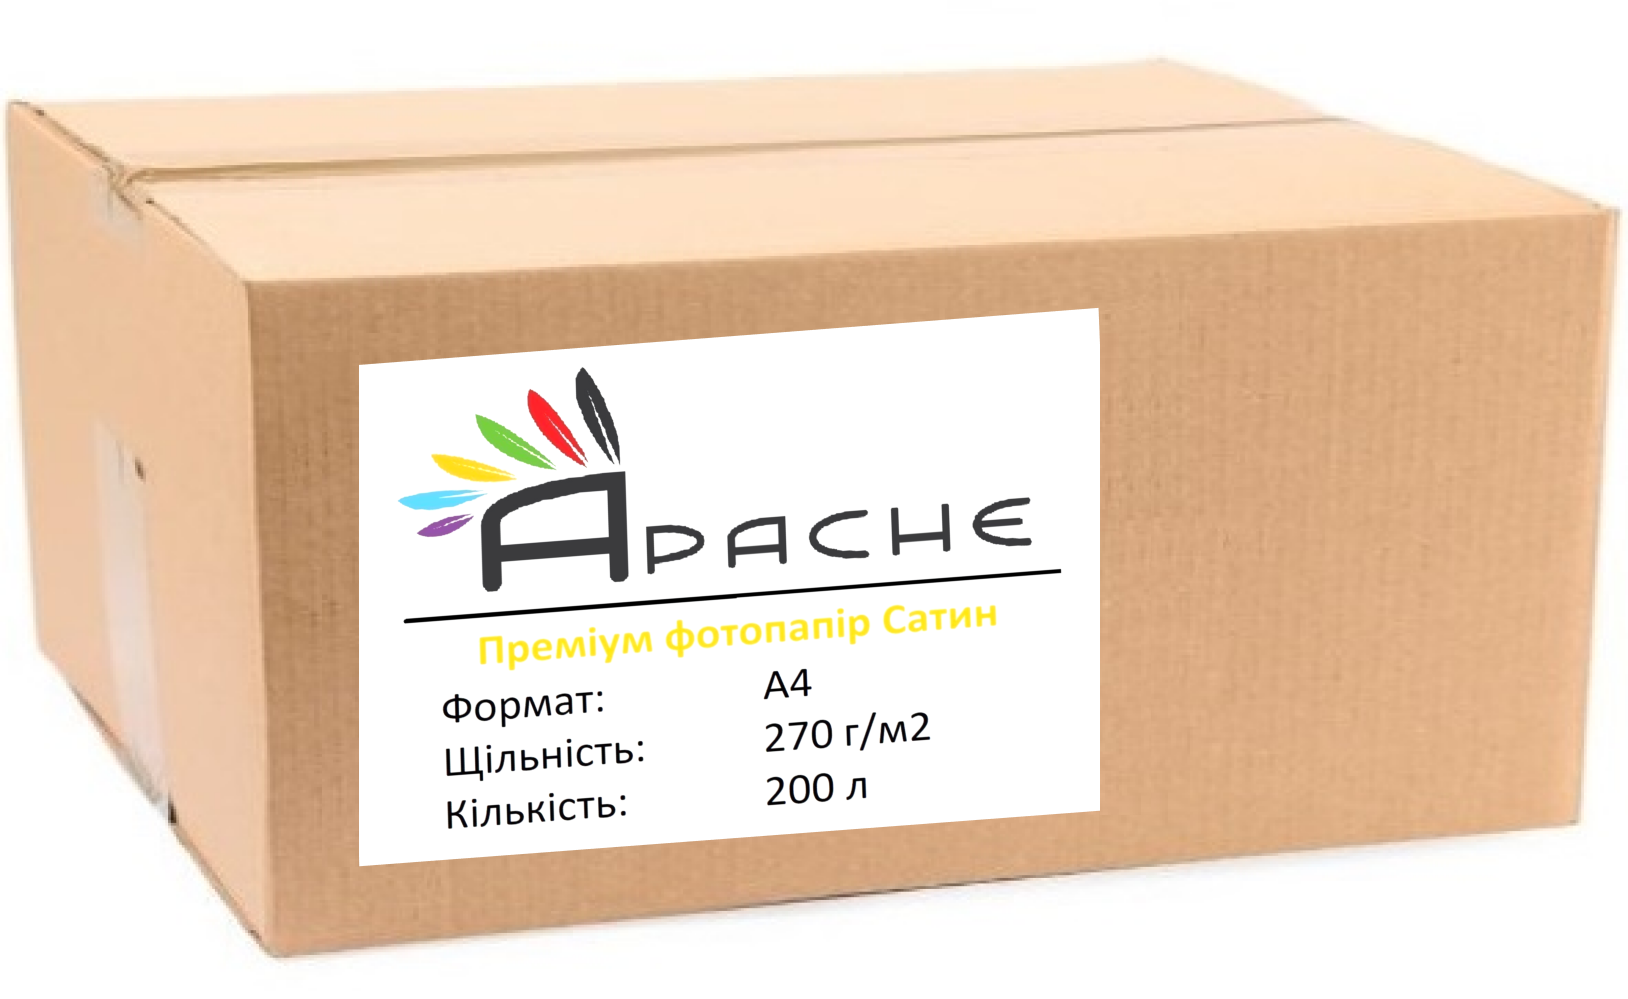 Фотопапір Apache A4 (200л) 270г/м2 | Купити в інтернет магазині